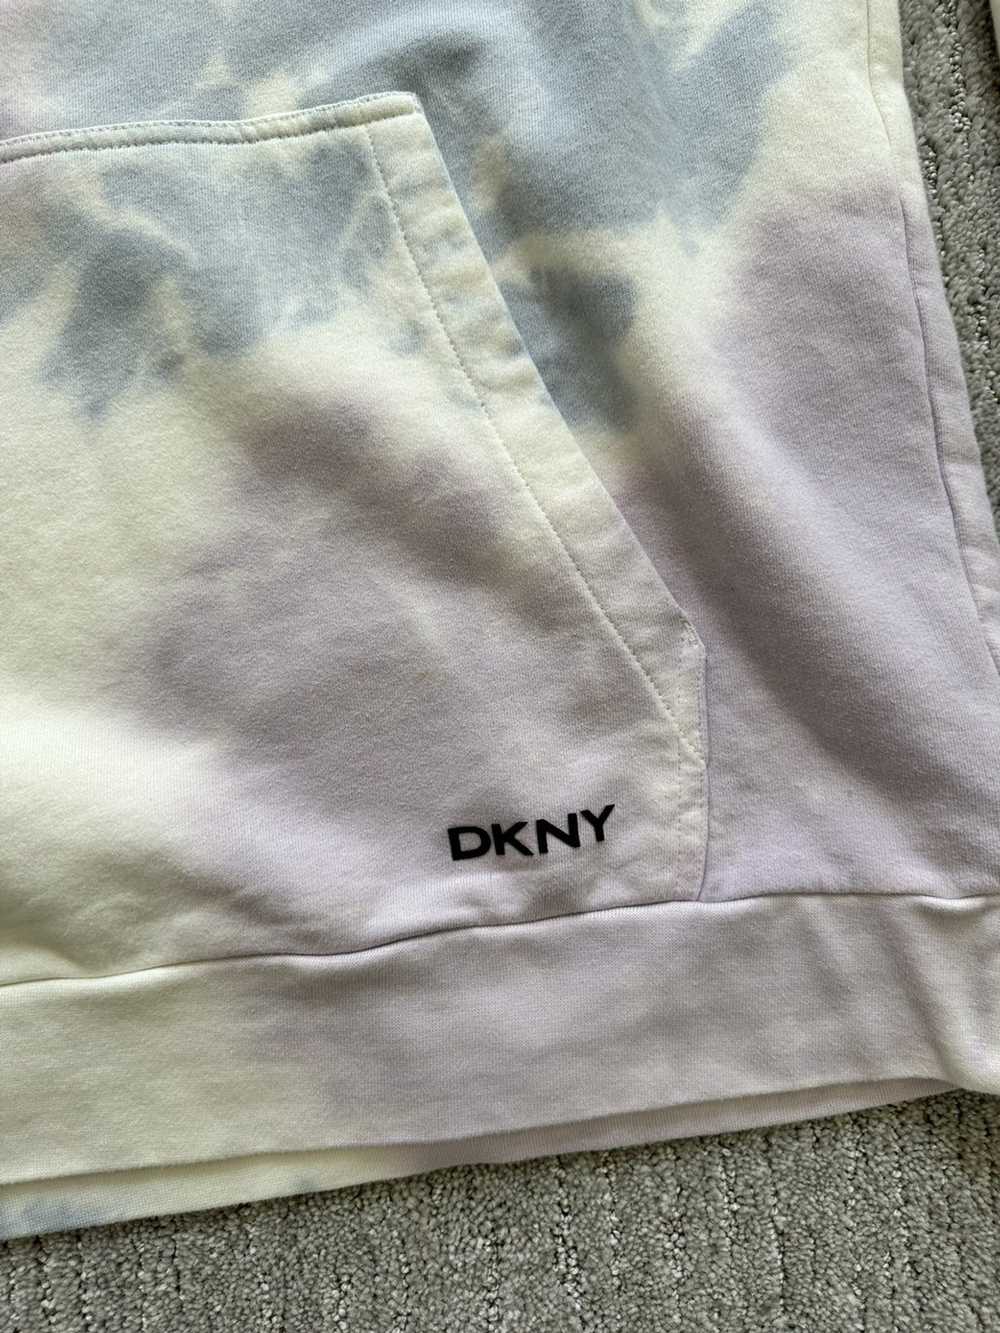 DKNY DKNY Tye Dye Hoodie - image 2